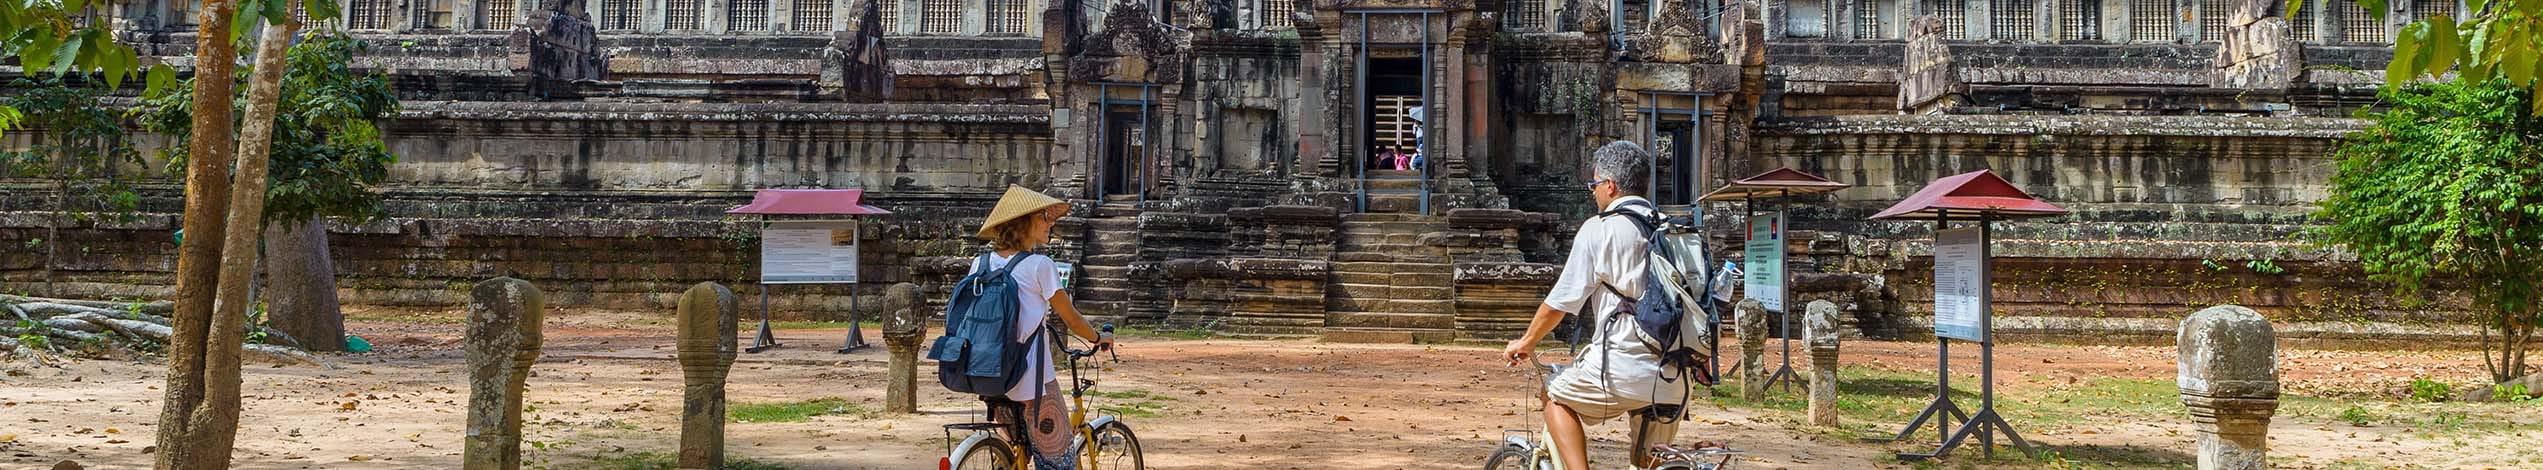 Udforsk Cambodja på cykel